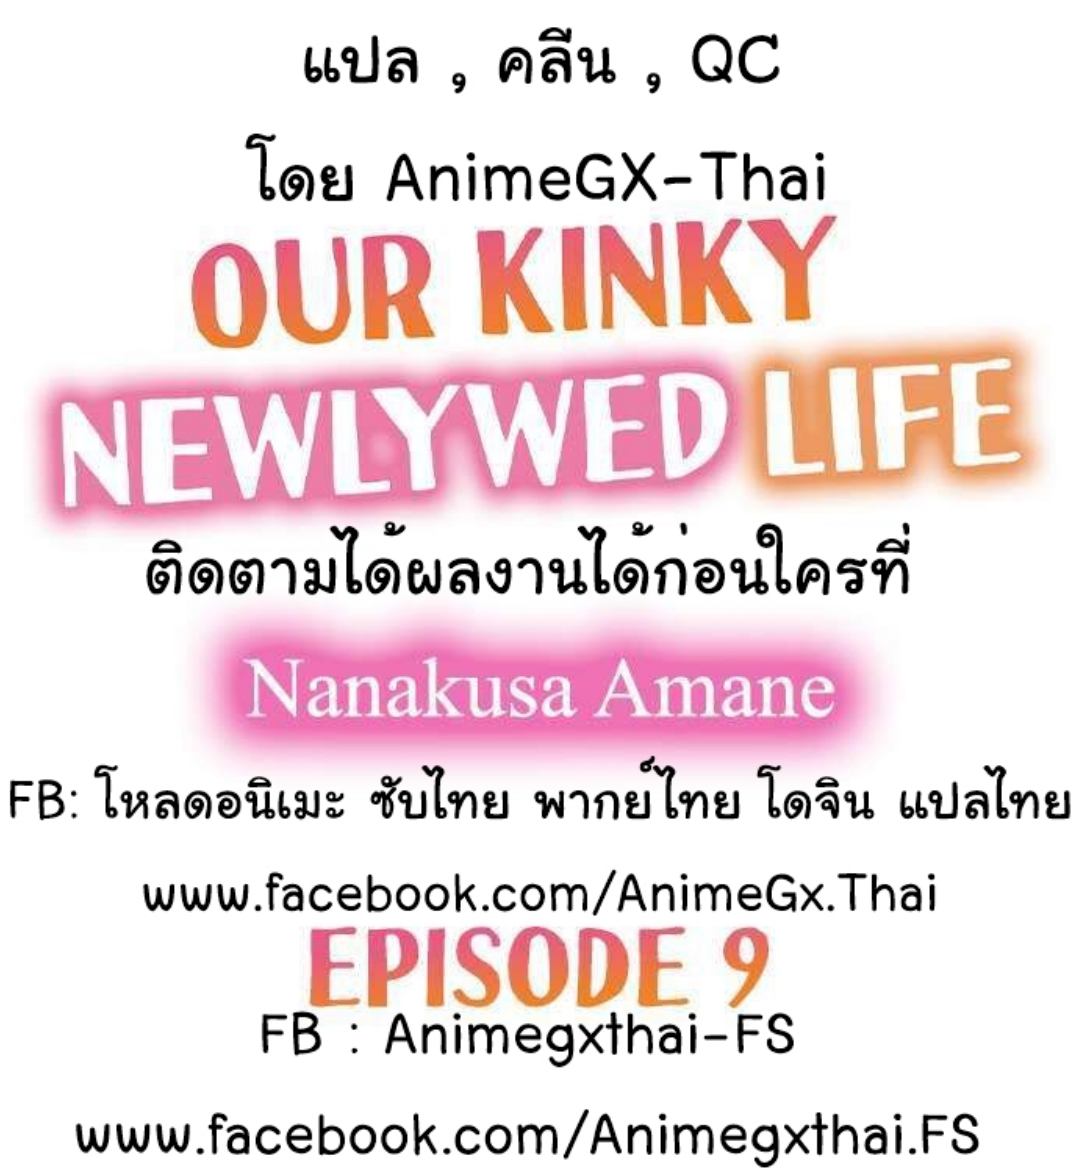 Our Kinky Newlywed Life 9 (2)